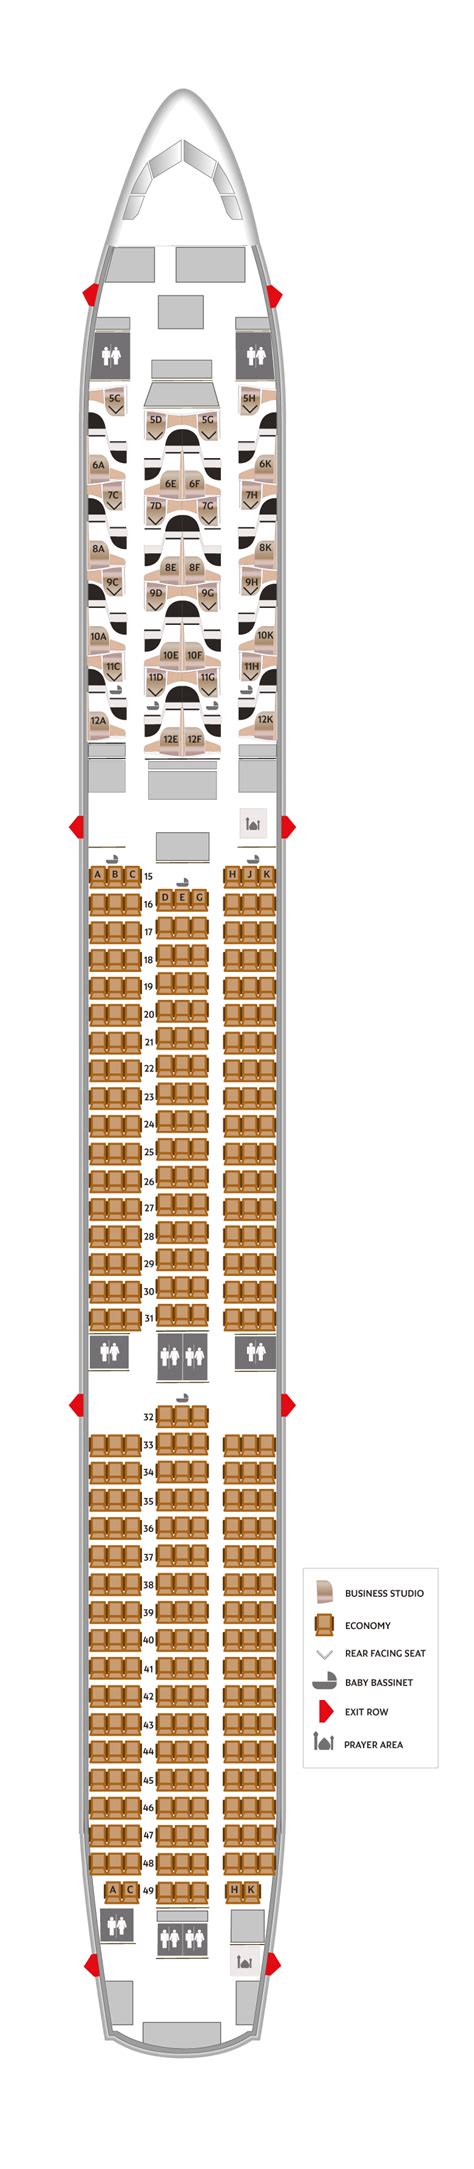 Aircraft 781 Etihad Seat Map